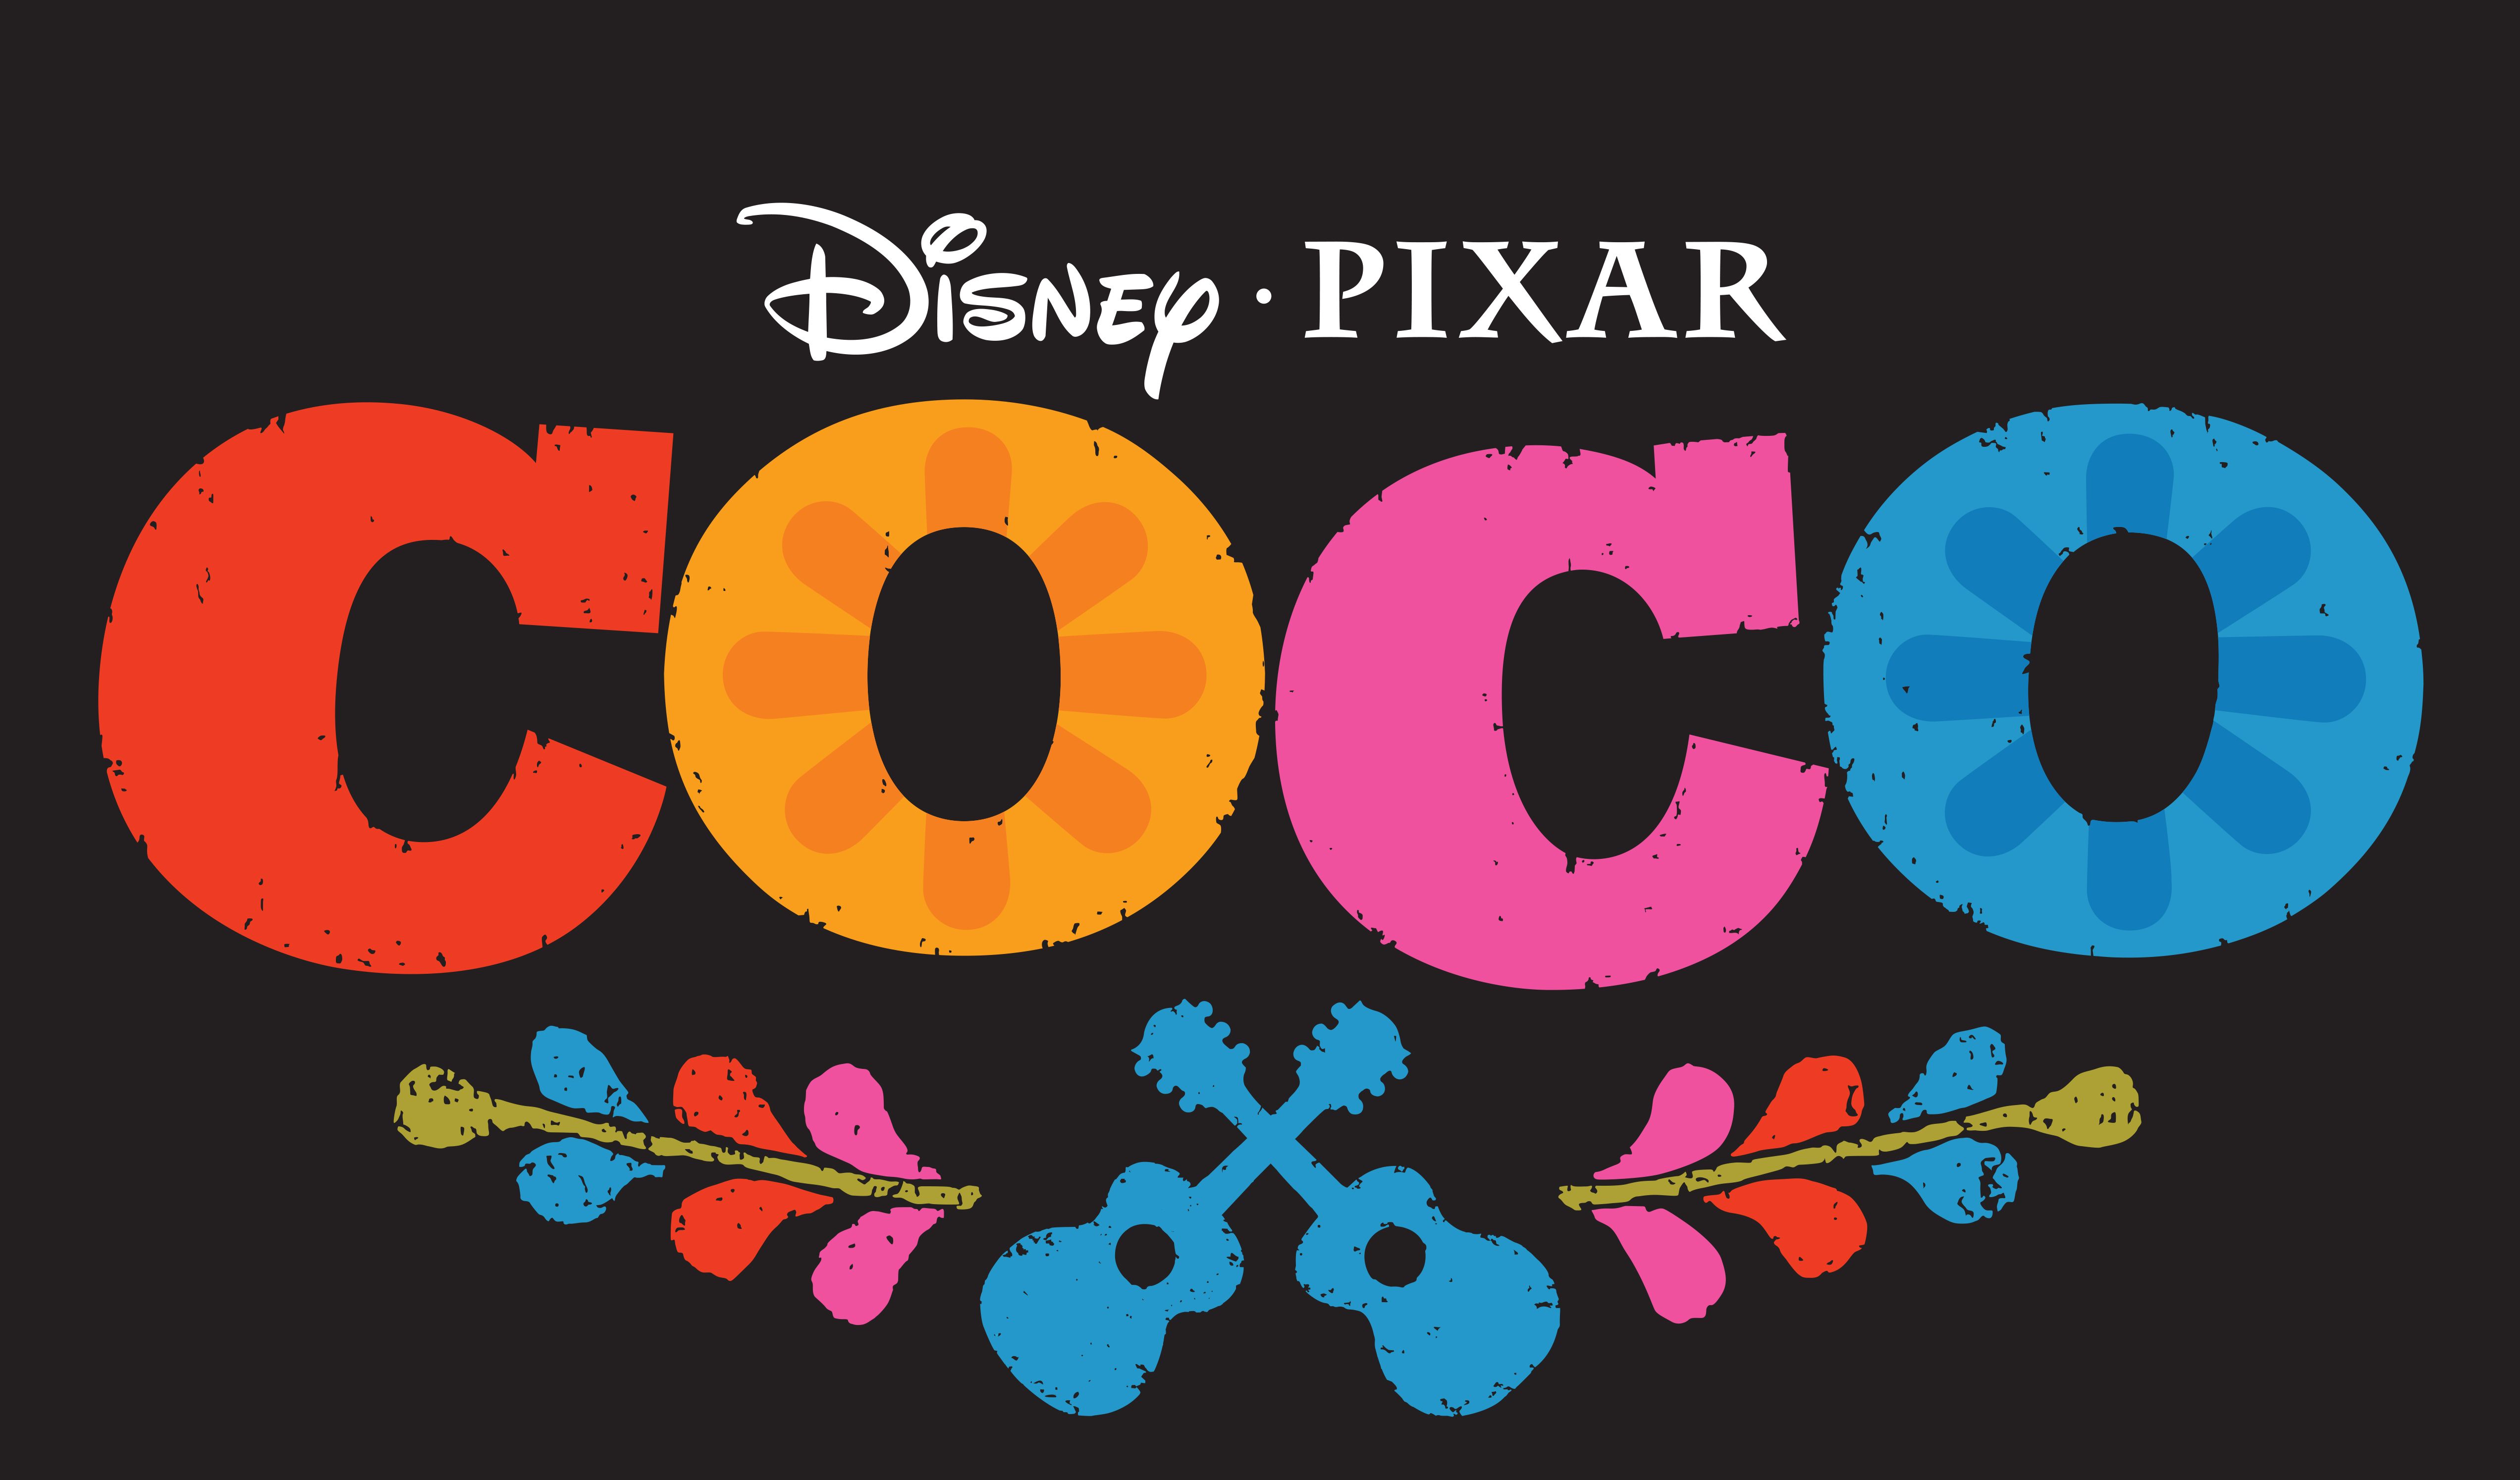 Coco de Pixar rendra hommage à l'artiste emblématique Frida Kahlo